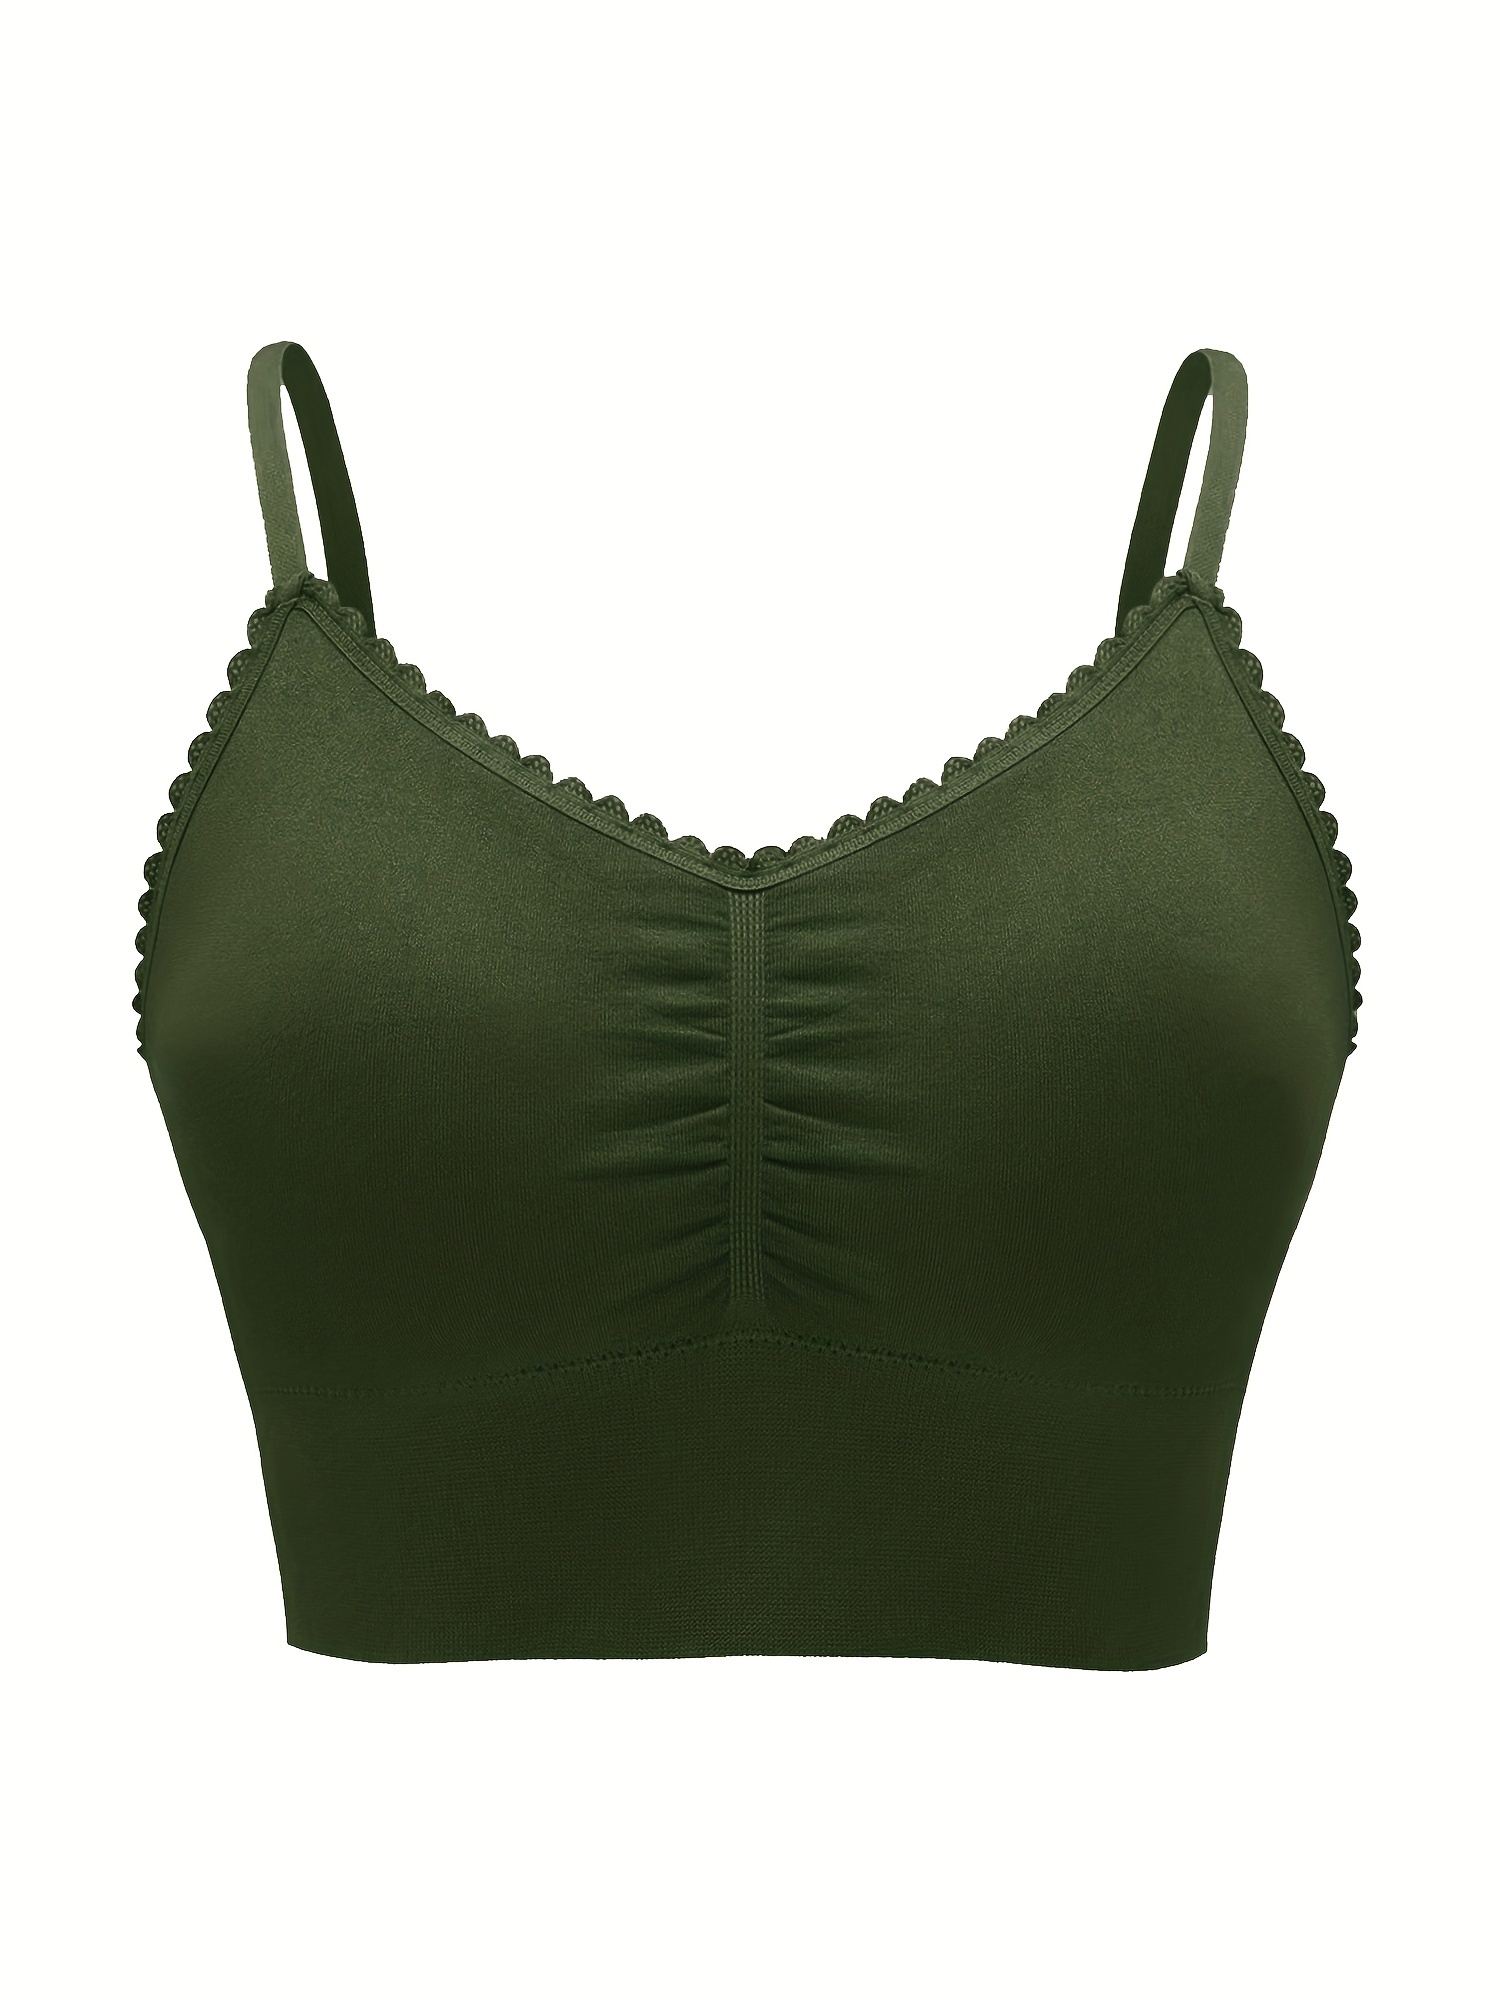 Buy Green Bras for Women by KAPPA Online